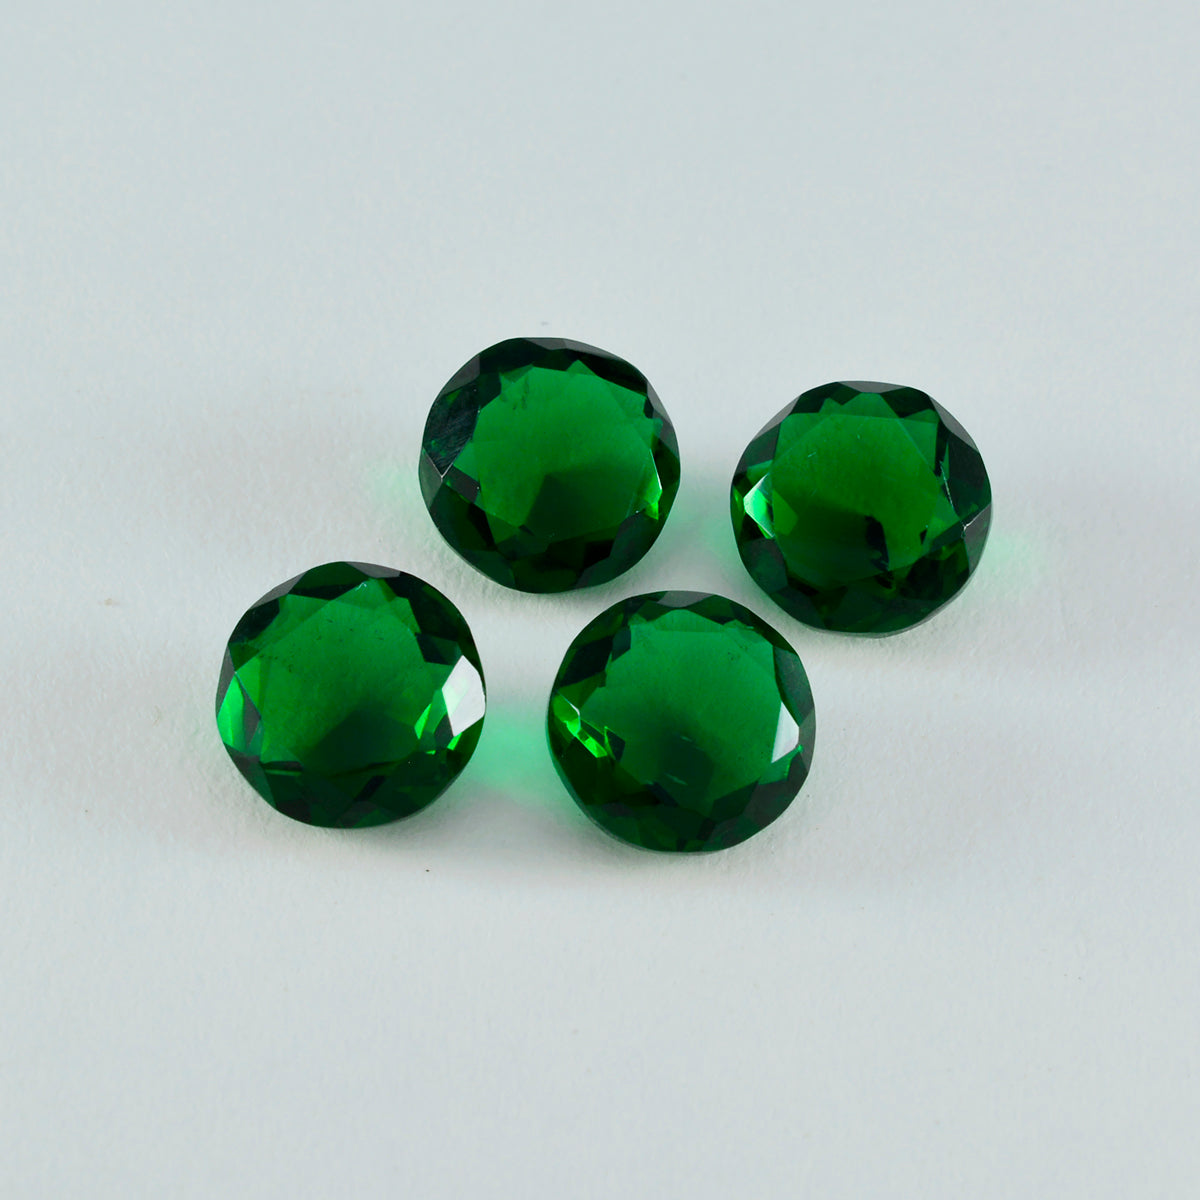 Riyogems 1 pieza Esmeralda verde CZ facetada 12x12mm forma redonda gema de buena calidad